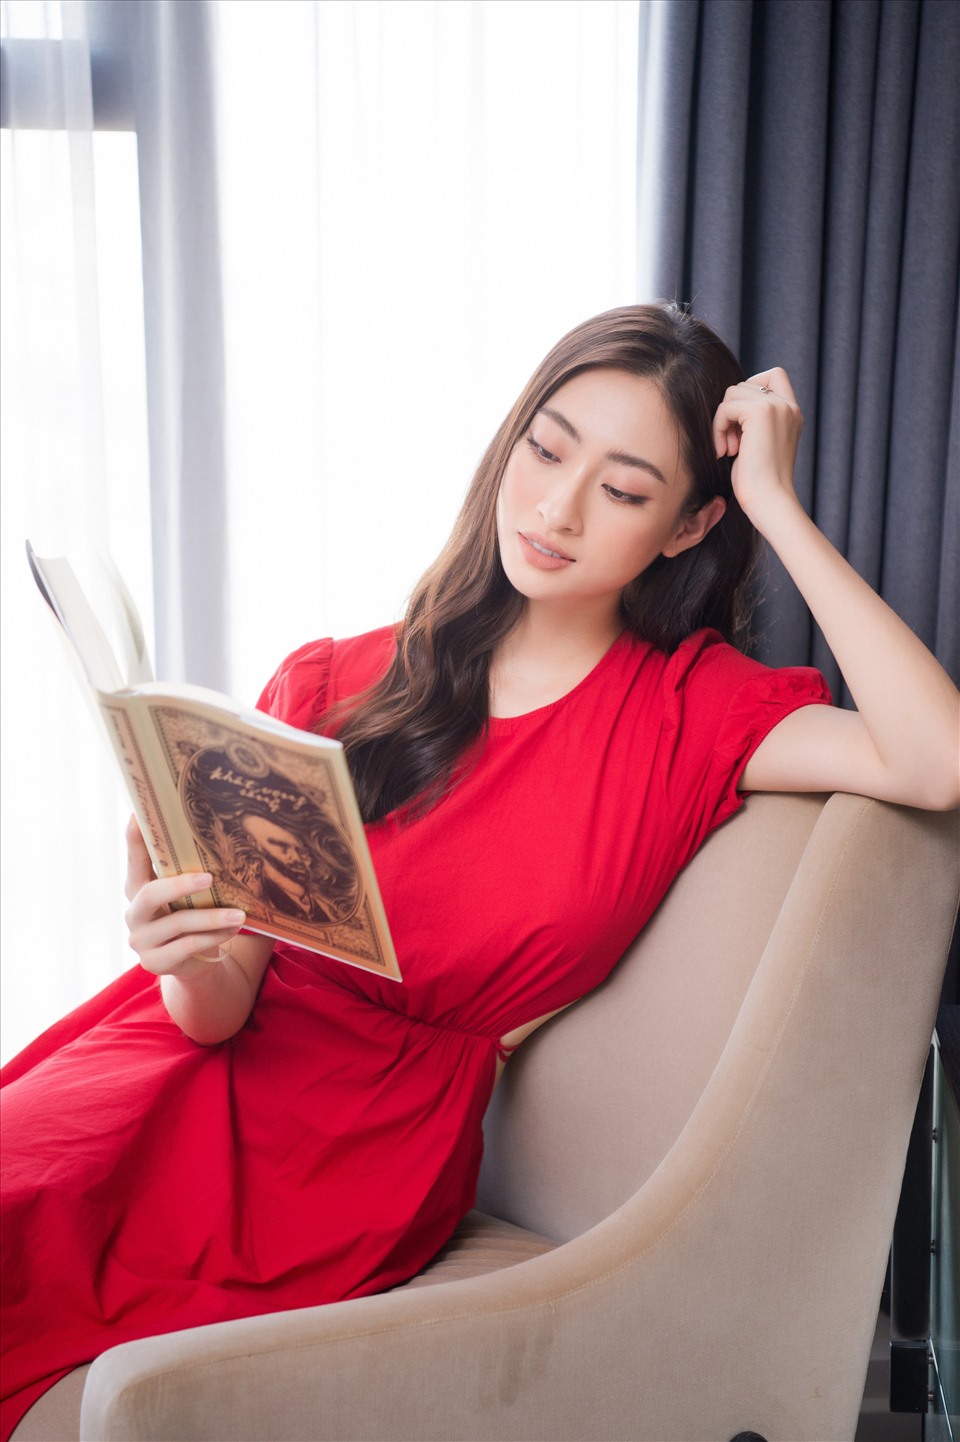 Đăng quang ngôi vị Miss World Vietnam 2019, Hoa hậu Lương Thuỳ Linh khiến công chúng không khỏi ngưỡng mộ bởi loạt những thành tích nổi bật trong nhiều lĩnh vực khác nhau. Trước đó, người đẹp gốc Cao Bằng từng gây bất ngờ khi trở thành giám đốc của một dự án bất động sản ở tuổi 20. Ảnh: Sen Vàng.